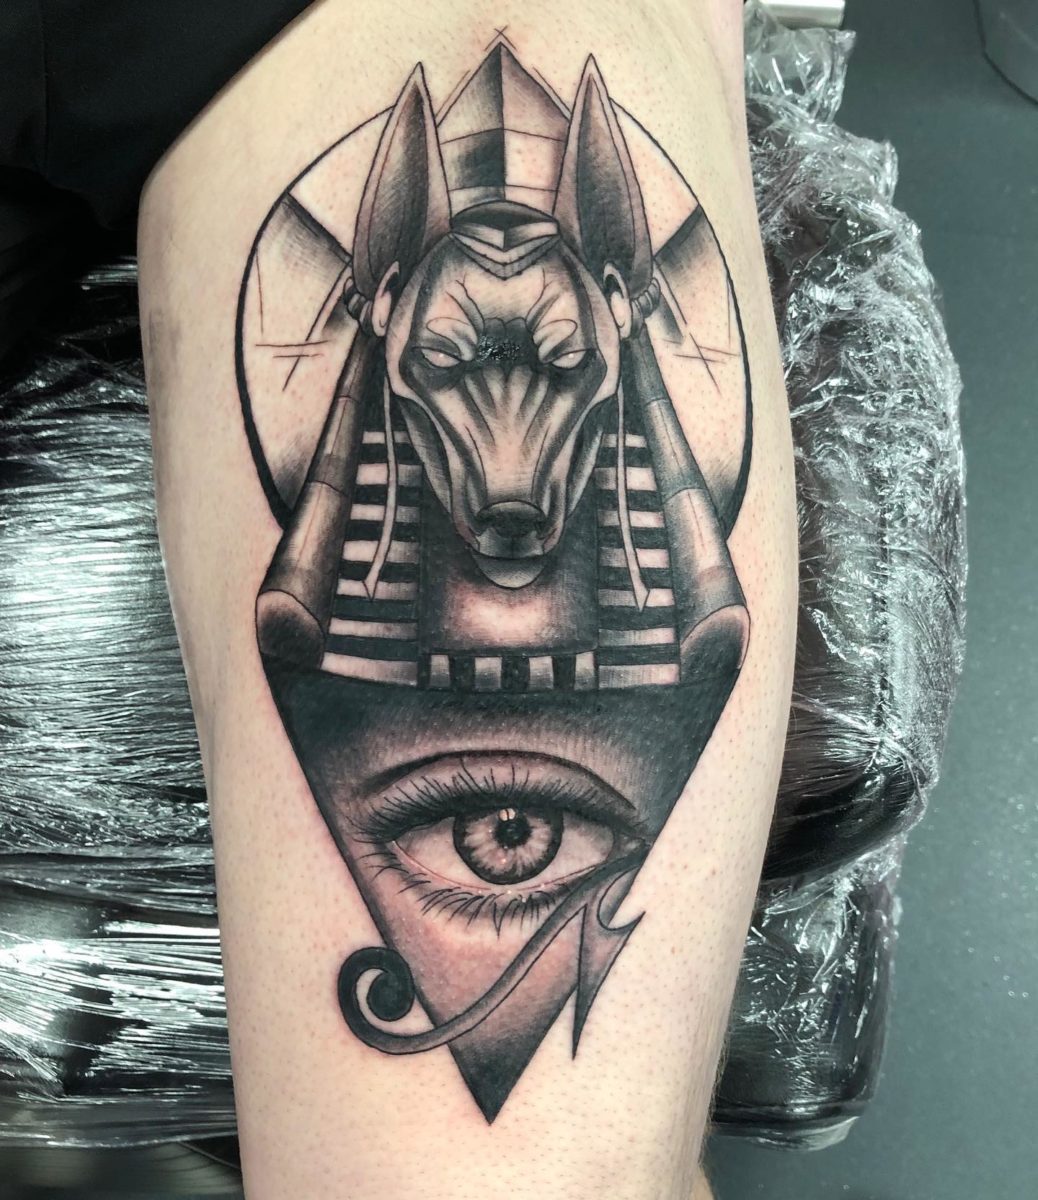 eye of horus tattoo ideas